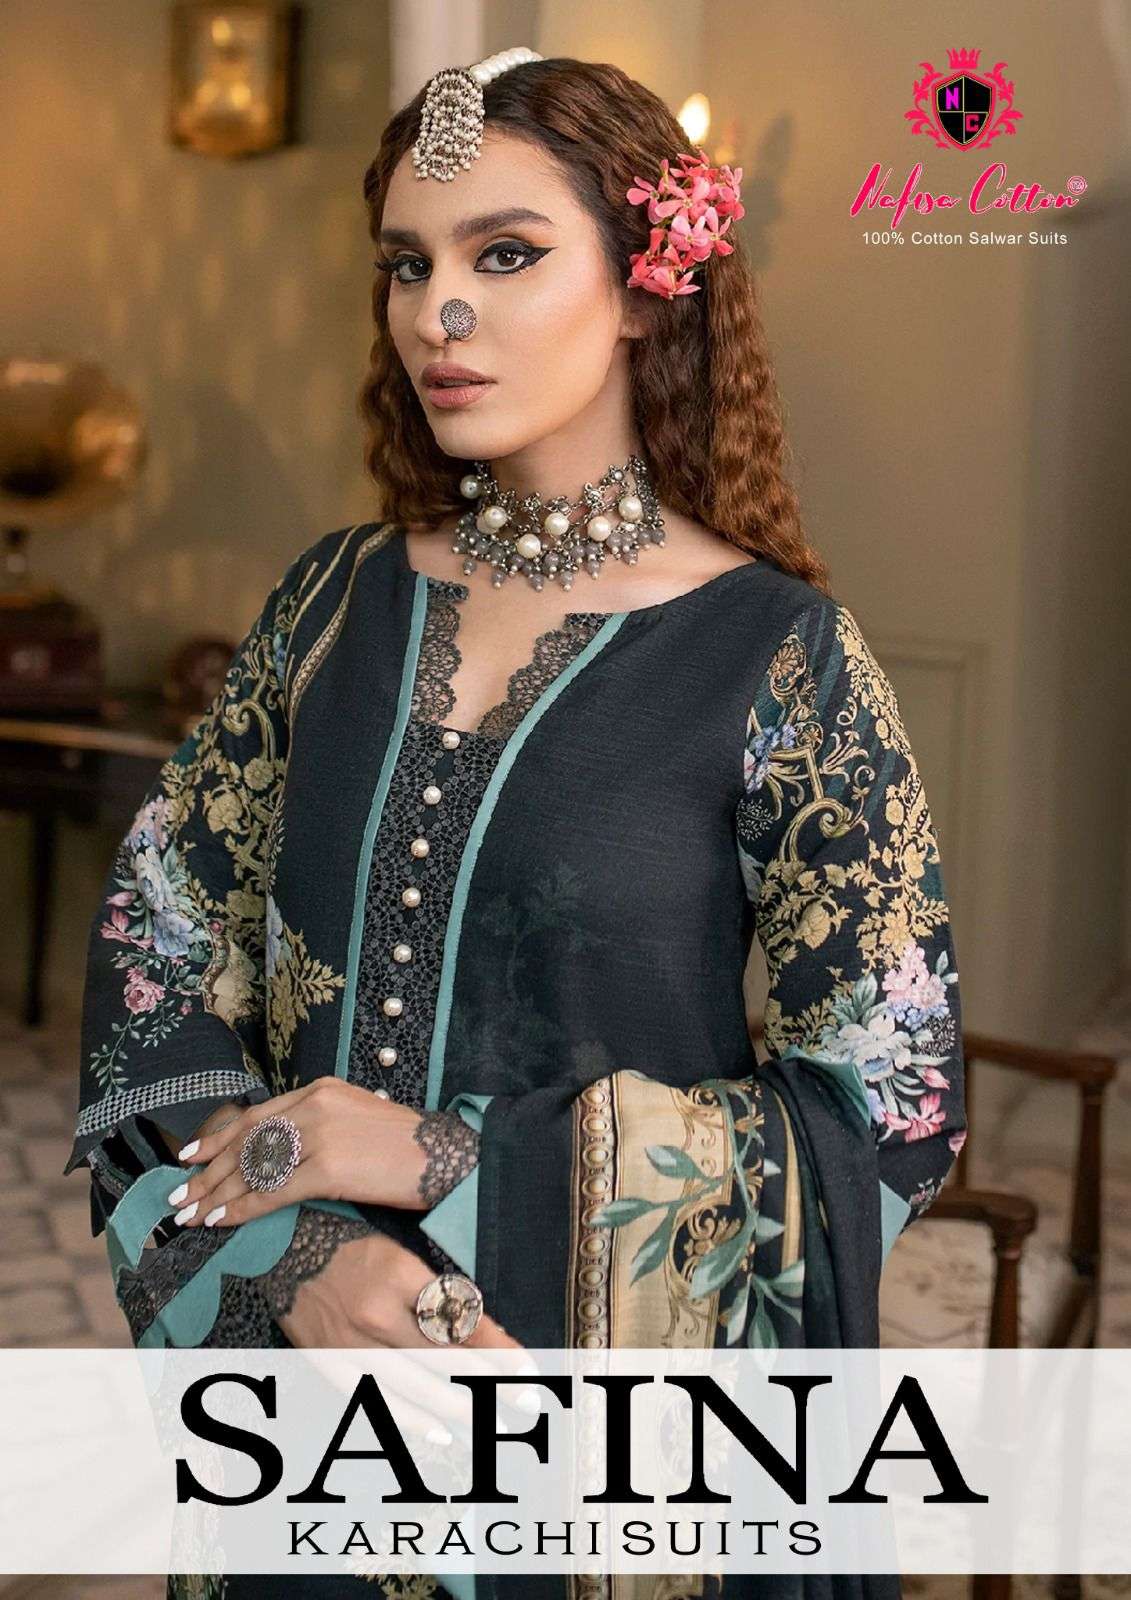 nafisa cotton present safina karachi suits digital printed pakistani salwar kameez material 